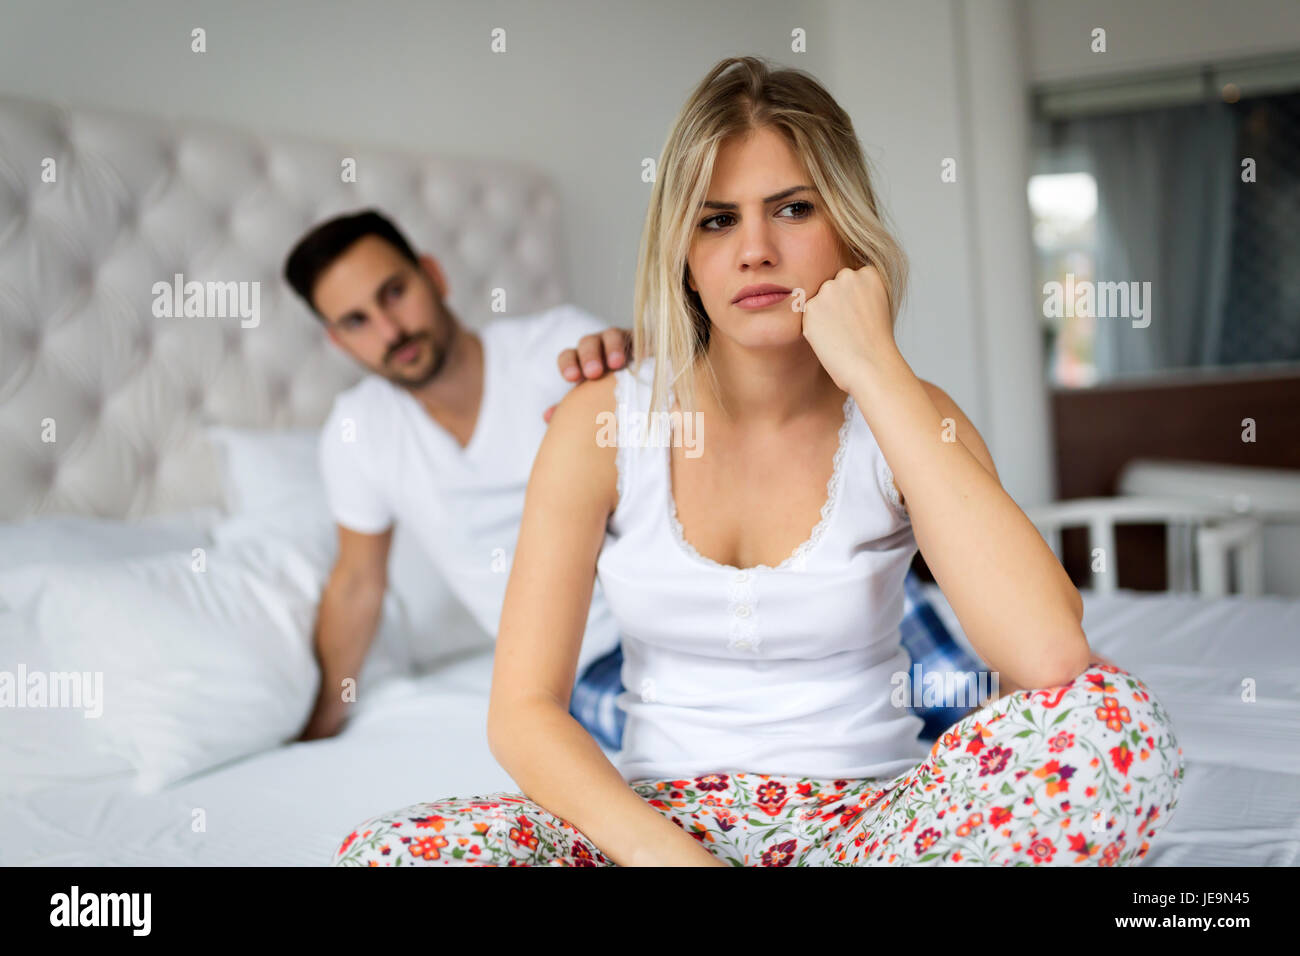 Young couple in bed ayant des problèmes et des crises Banque D'Images